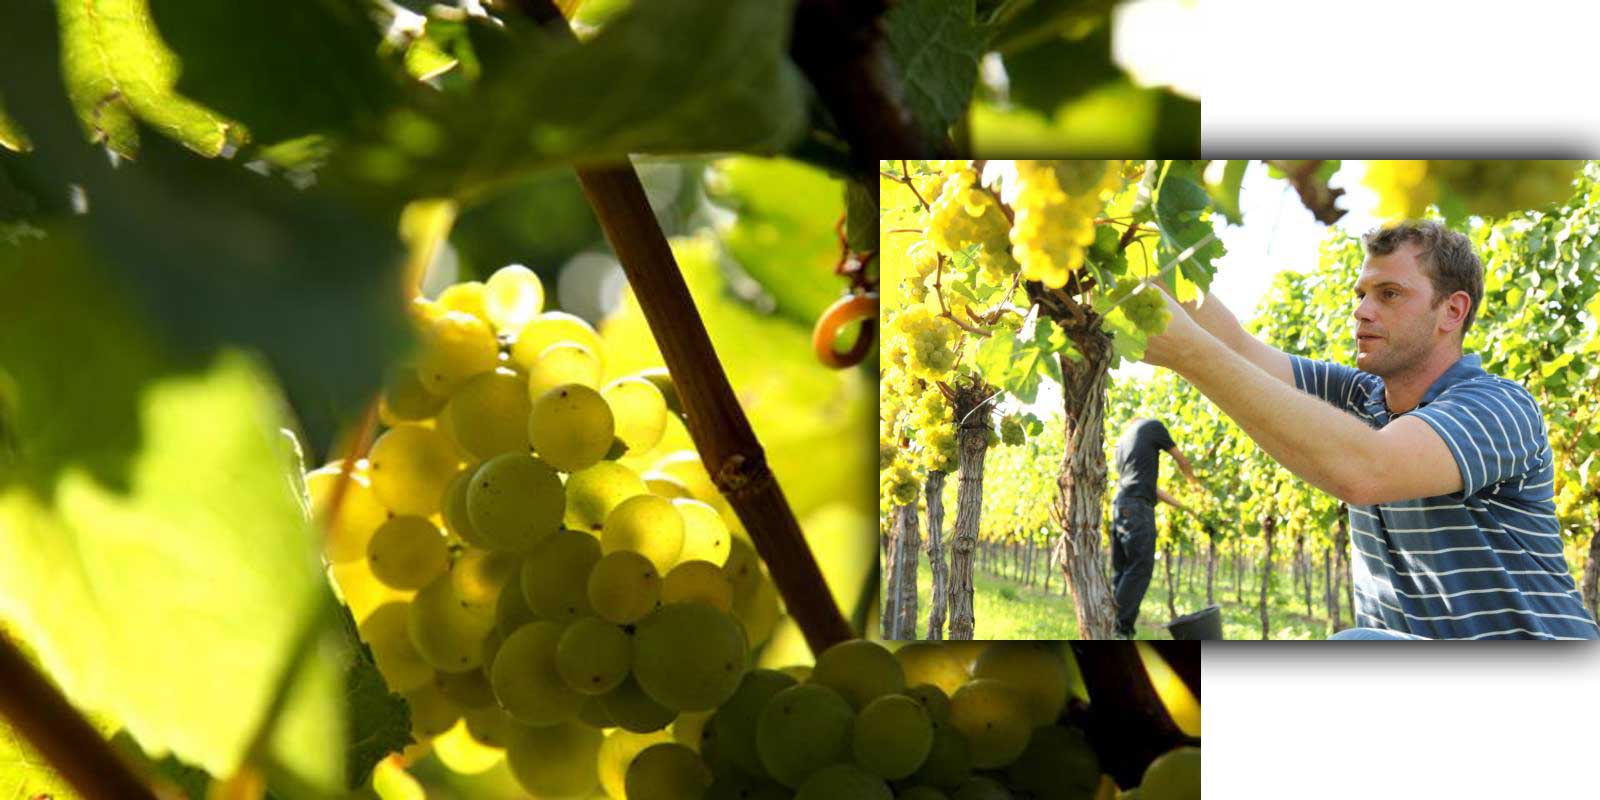 Vinska klet Aloisiushof - Pfalska / vinorodna regija Alois Kiefer Druzina Kiefer ze od 17. stoletja prideluje vino v Pfalskem. Alois Kiefer je leta 1950 ustanovil vinsko klet Aloisiushof, ki jo danes vodijo njegovi trije sinovi. Okolju prijazno vinogradnistvo, skrbno delo v kleti ob upostevanju terroirskih znacilnosti vin in stalna kontrola kakovosti so zagotovilo za visoko kakovost vin Kiefer.